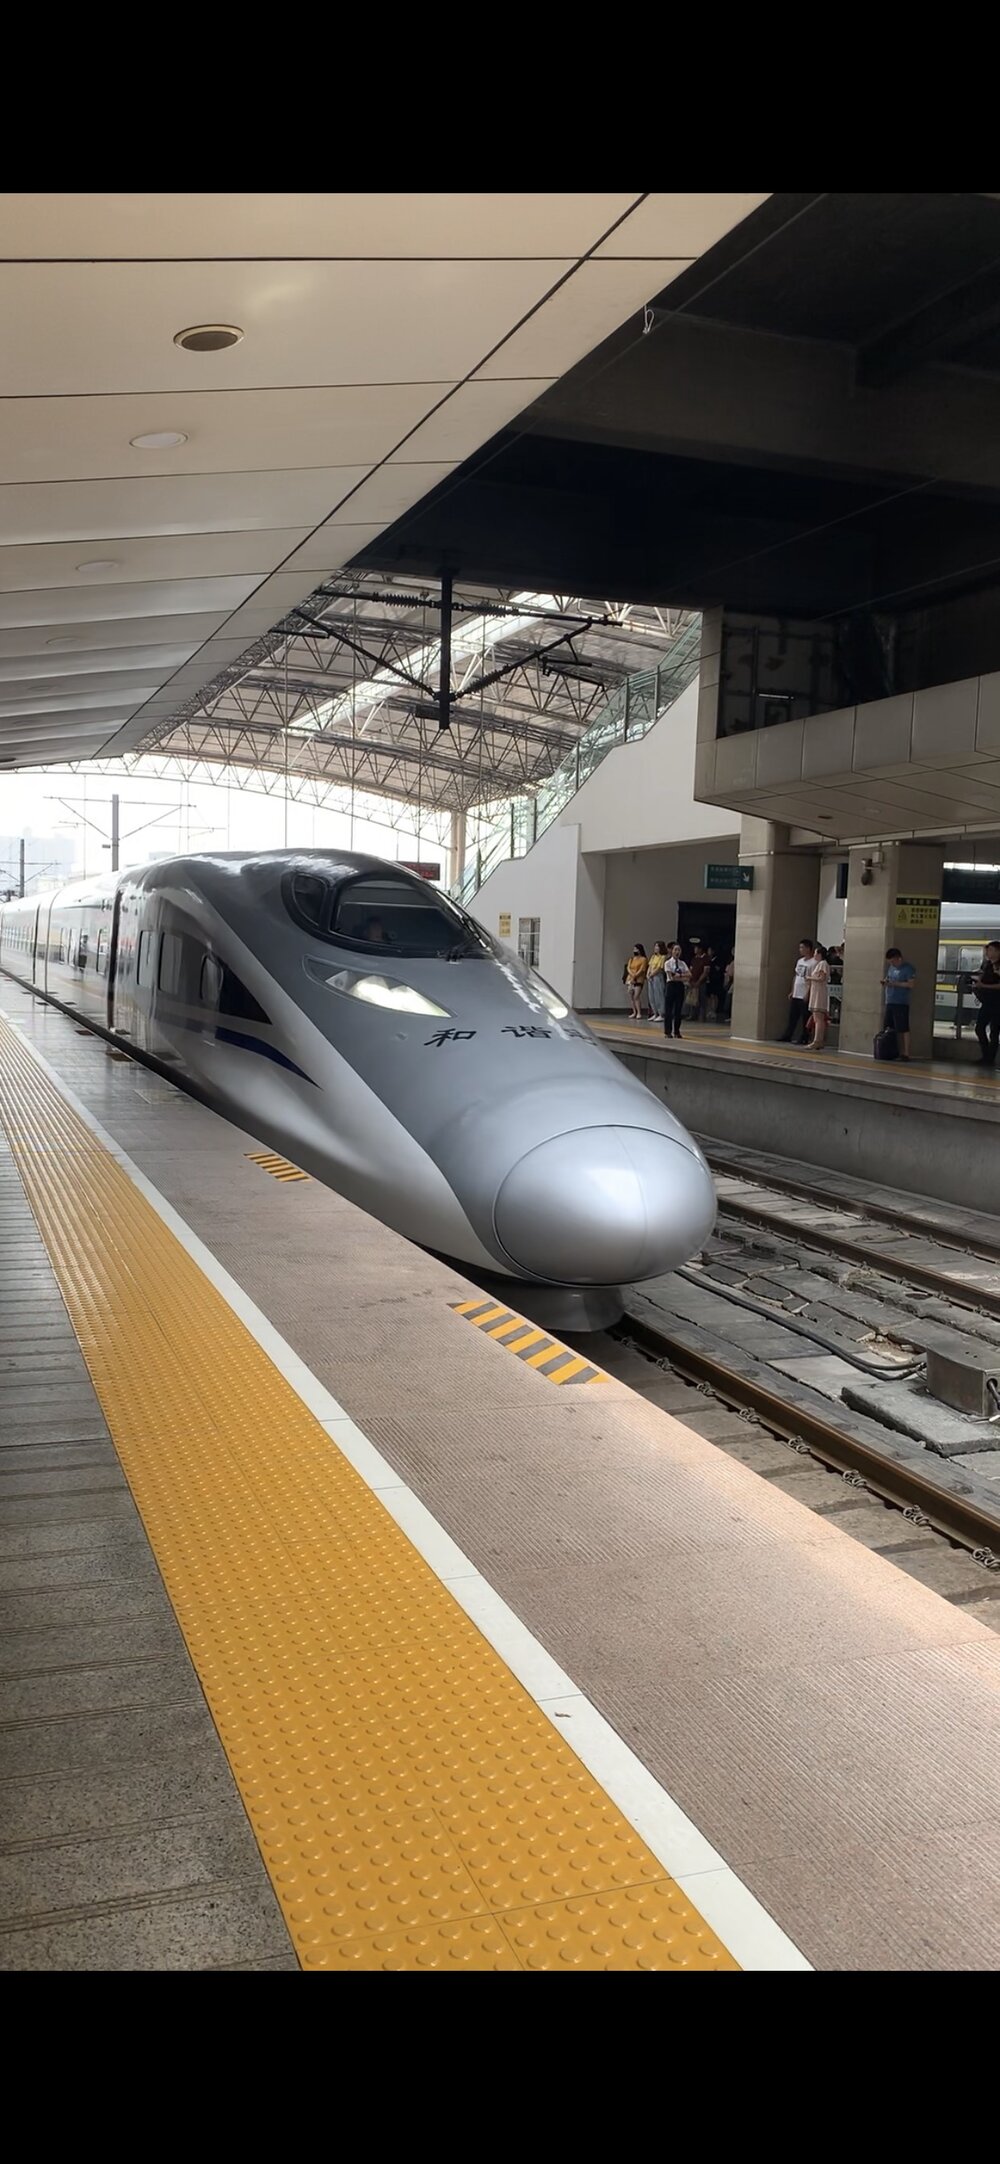   Bullet train in Zhengzhou Station/Henan.   